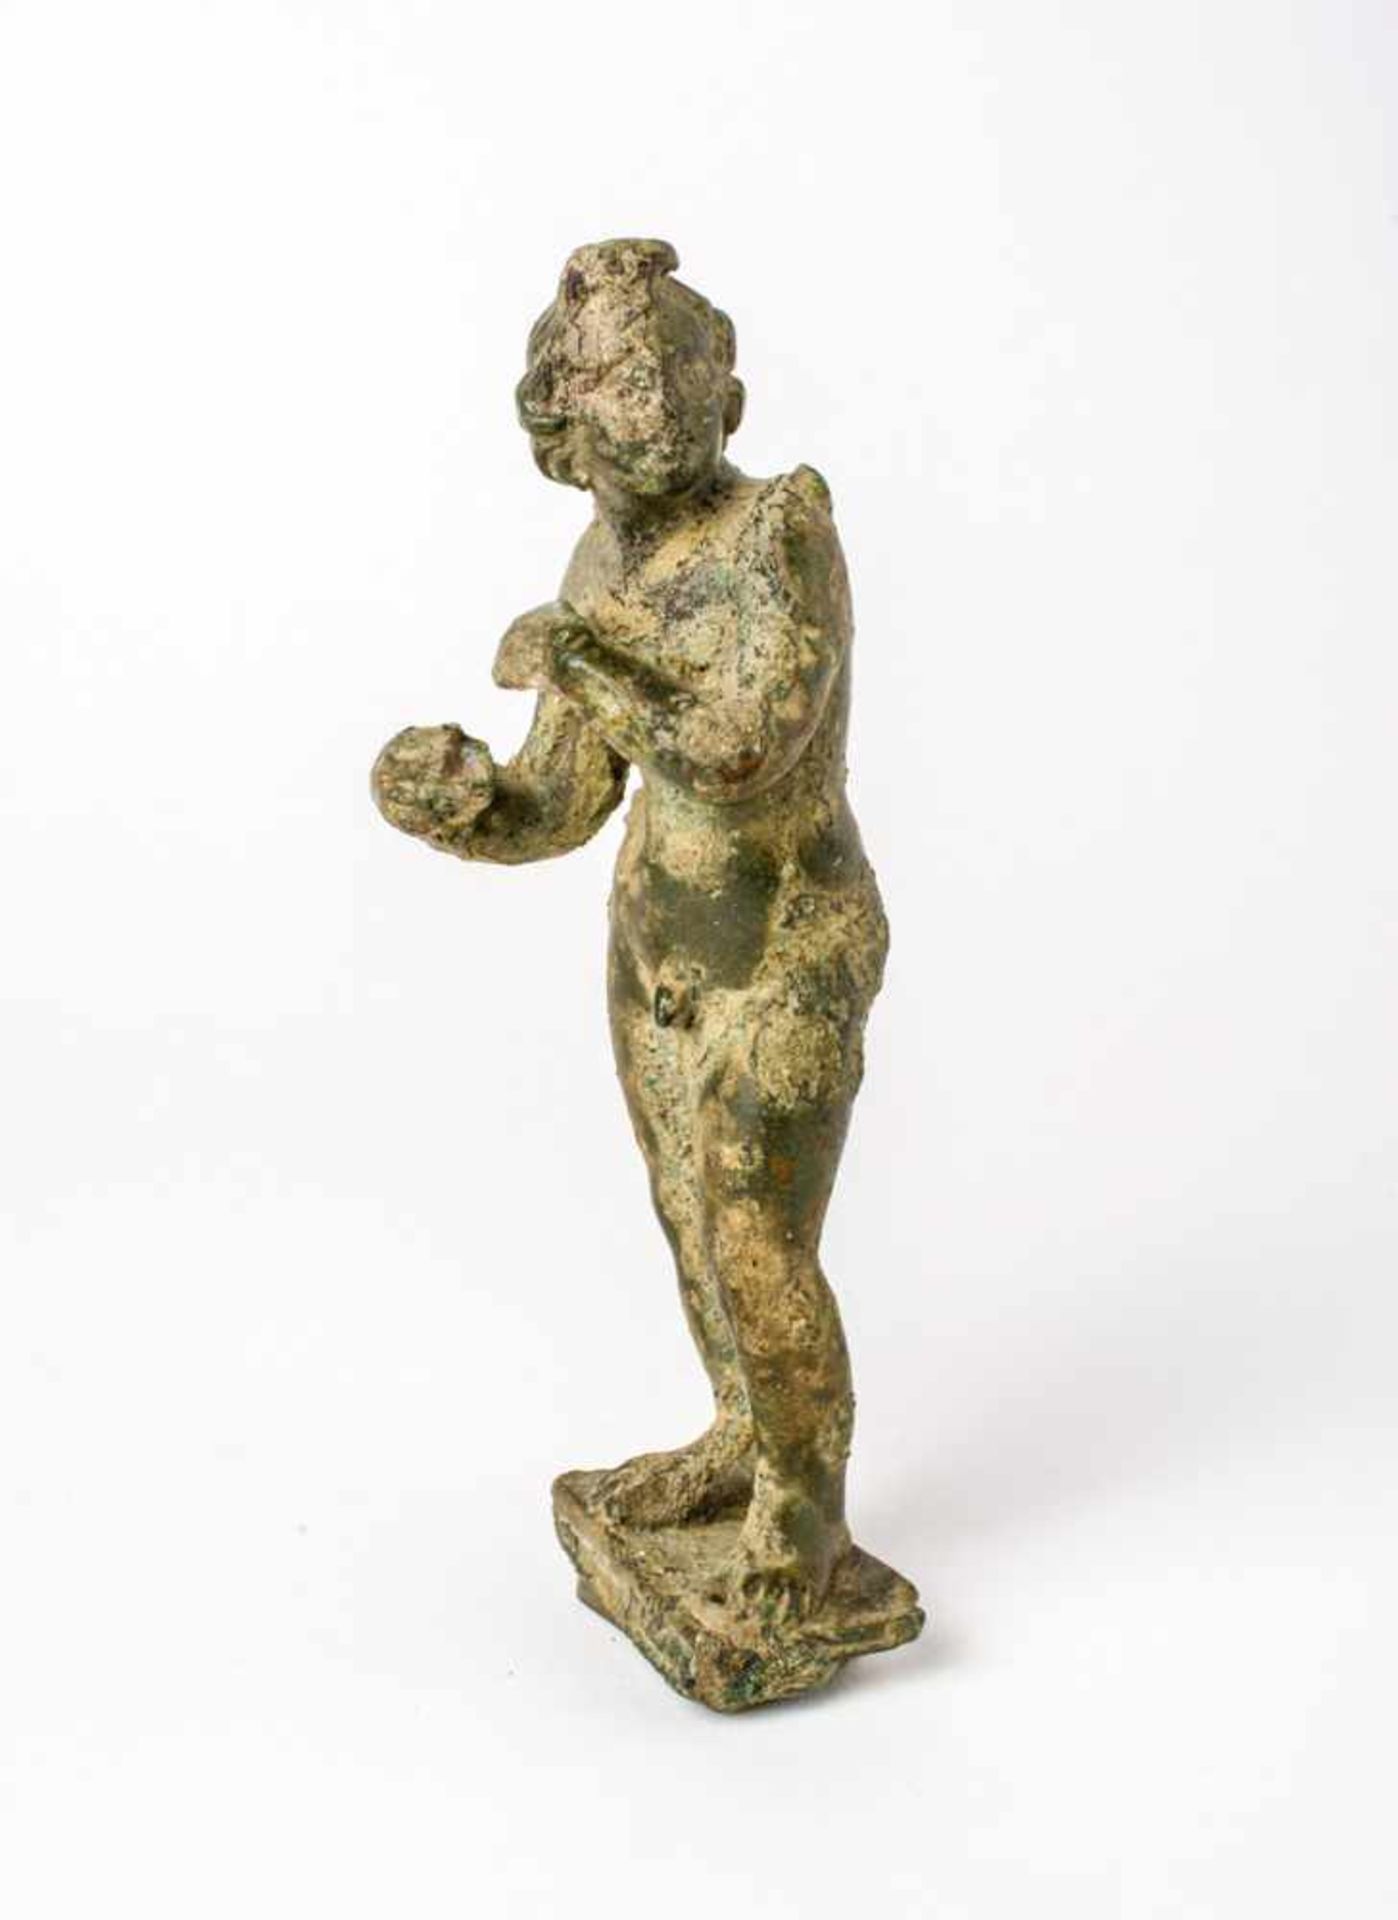 Cupido Bronzefigur, vermutlich provinzialrömisch 13,9 cm hoch Cupid, Bronze figure, maybe Roman